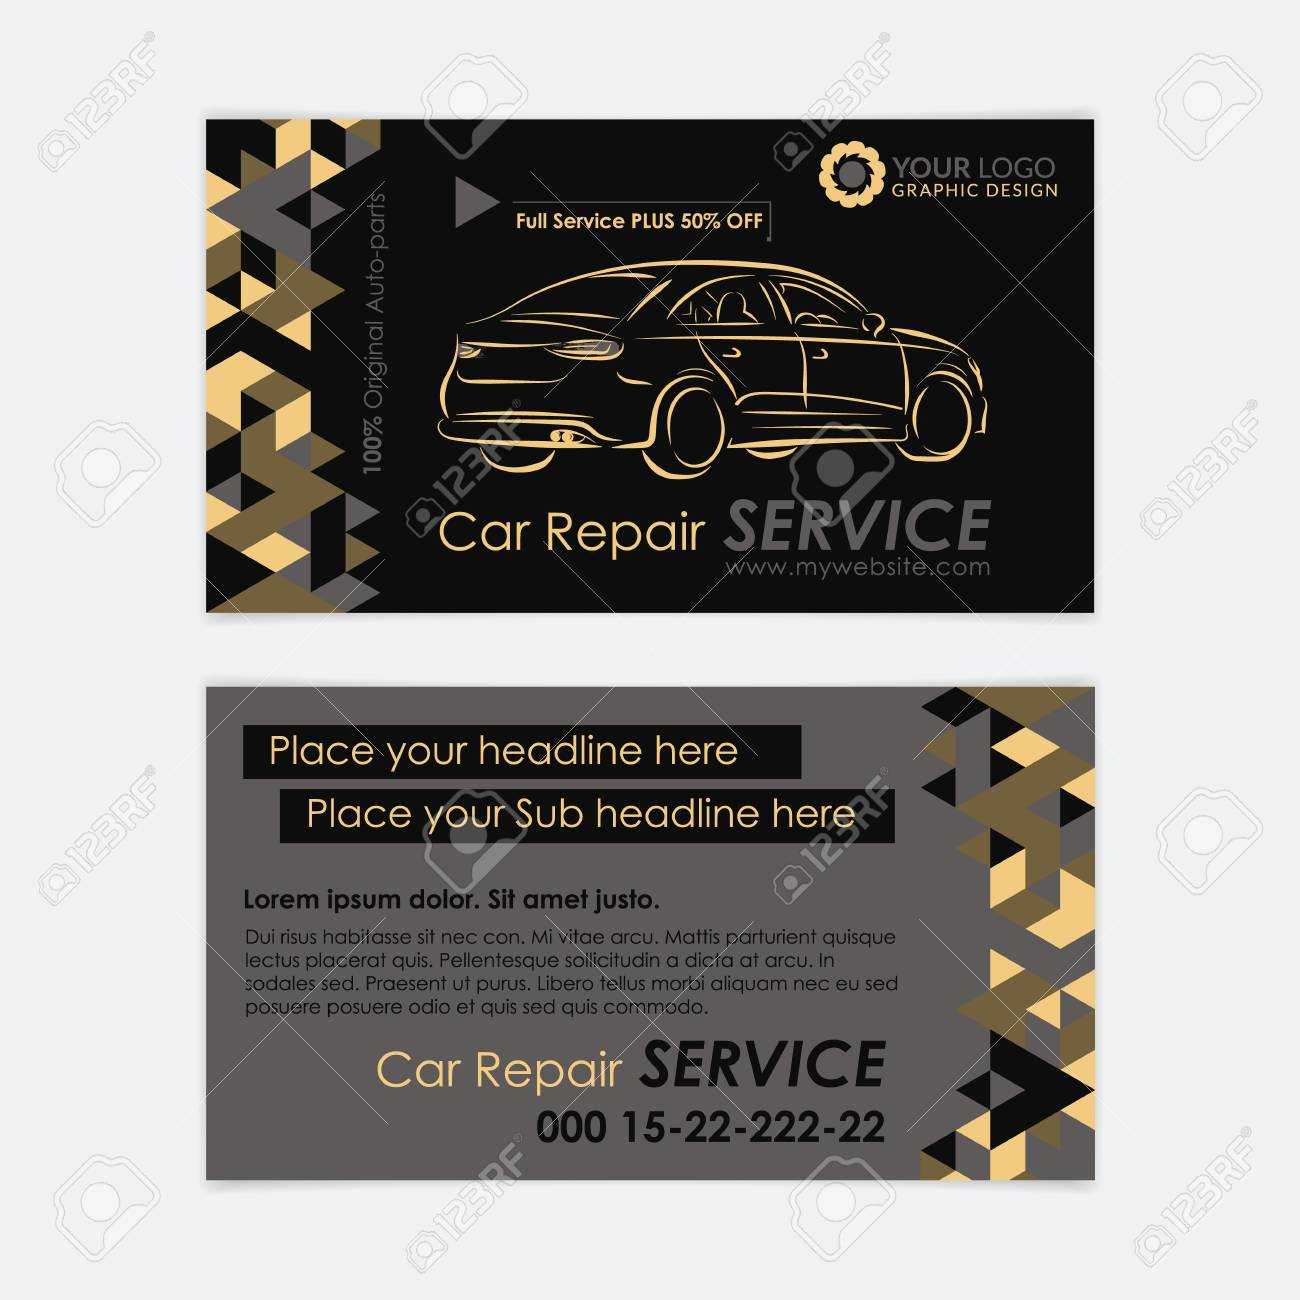 Automotive Service Business Card Template. Car Diagnostics And.. In Automotive Business Card Templates